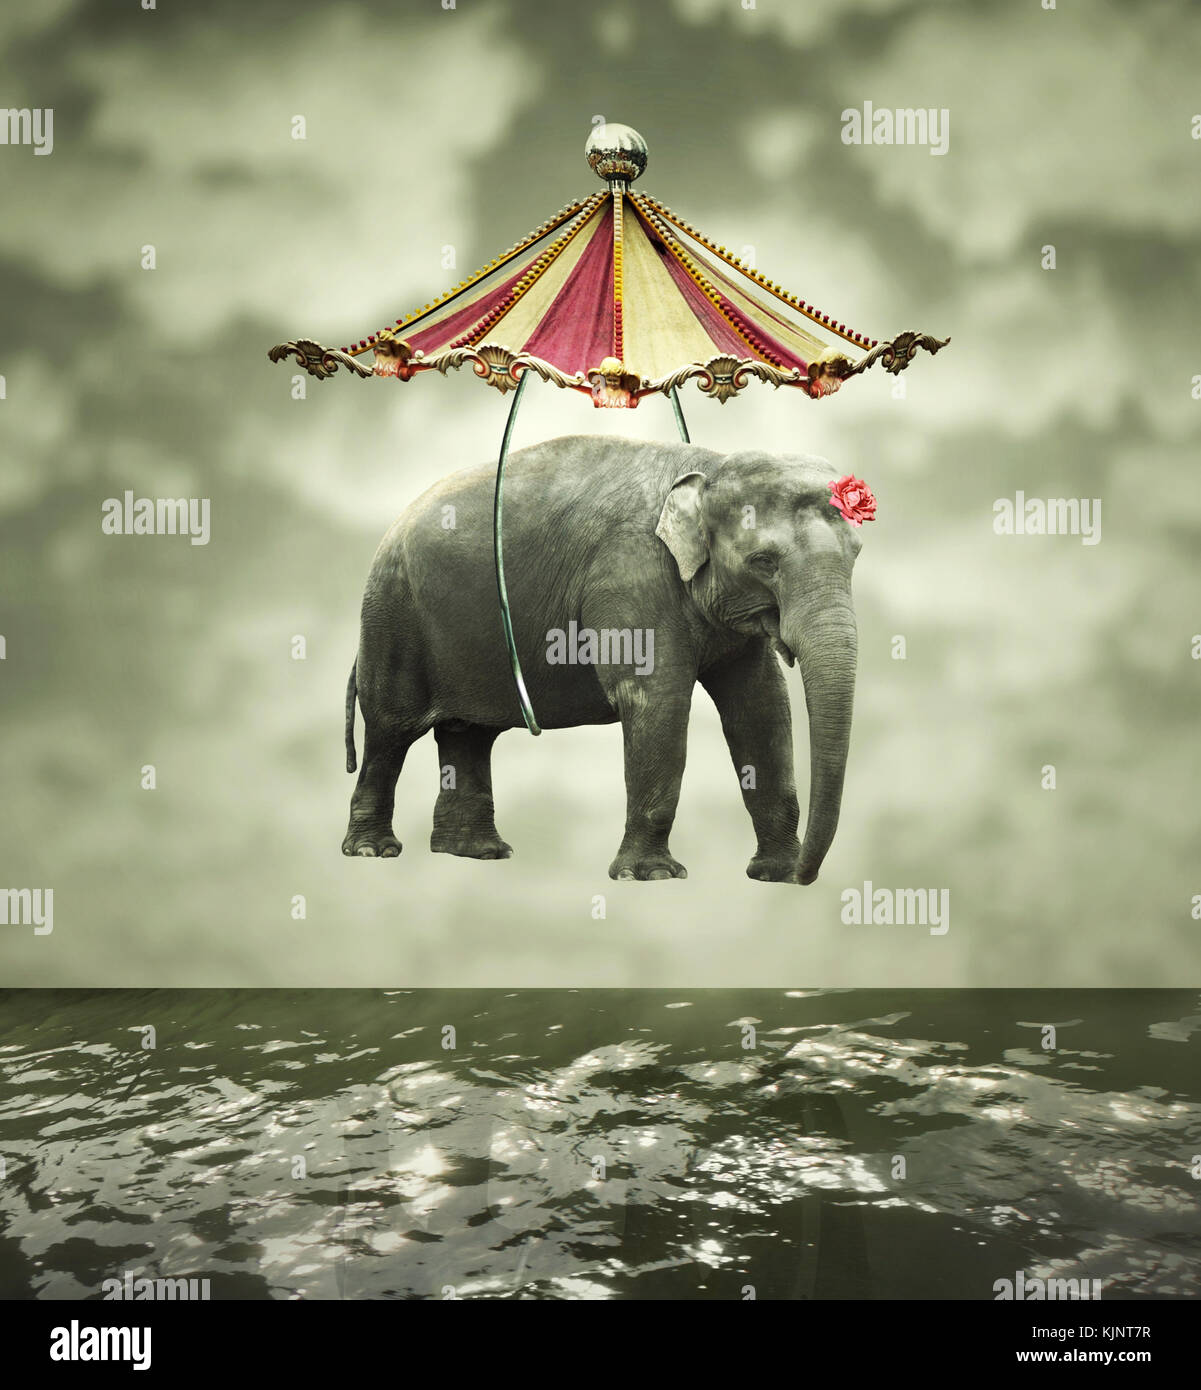 Image artistique et fantaisiste qui représentent un éléphant volant avec tente de cirque au-dessus de l'eau Banque D'Images